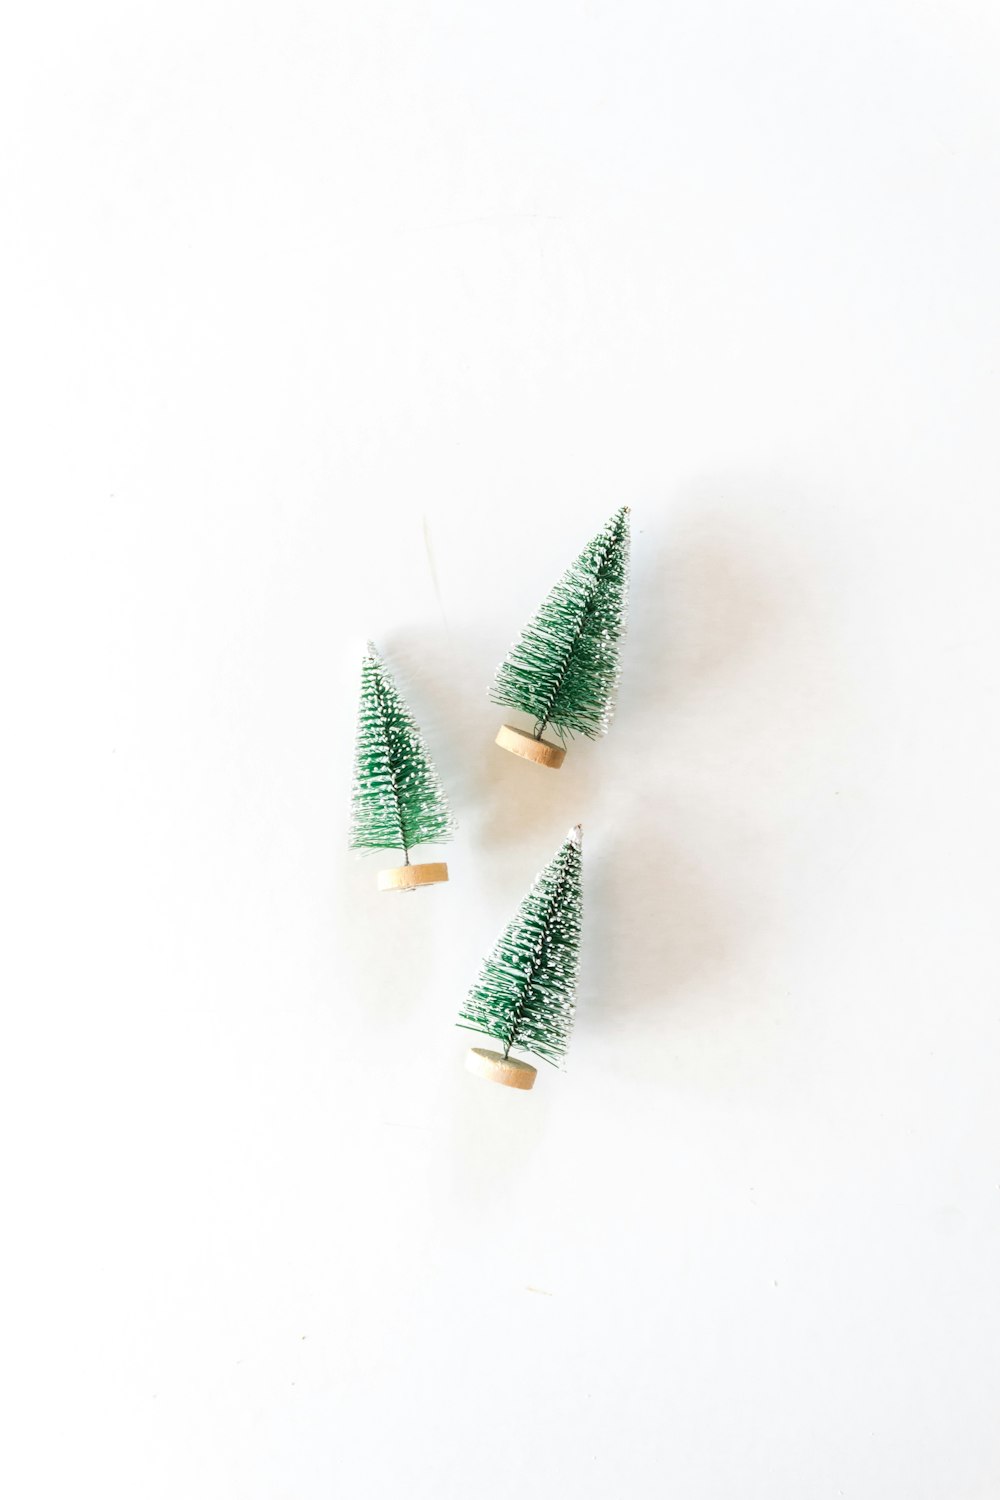 tre miniature di pino su superficie bianca